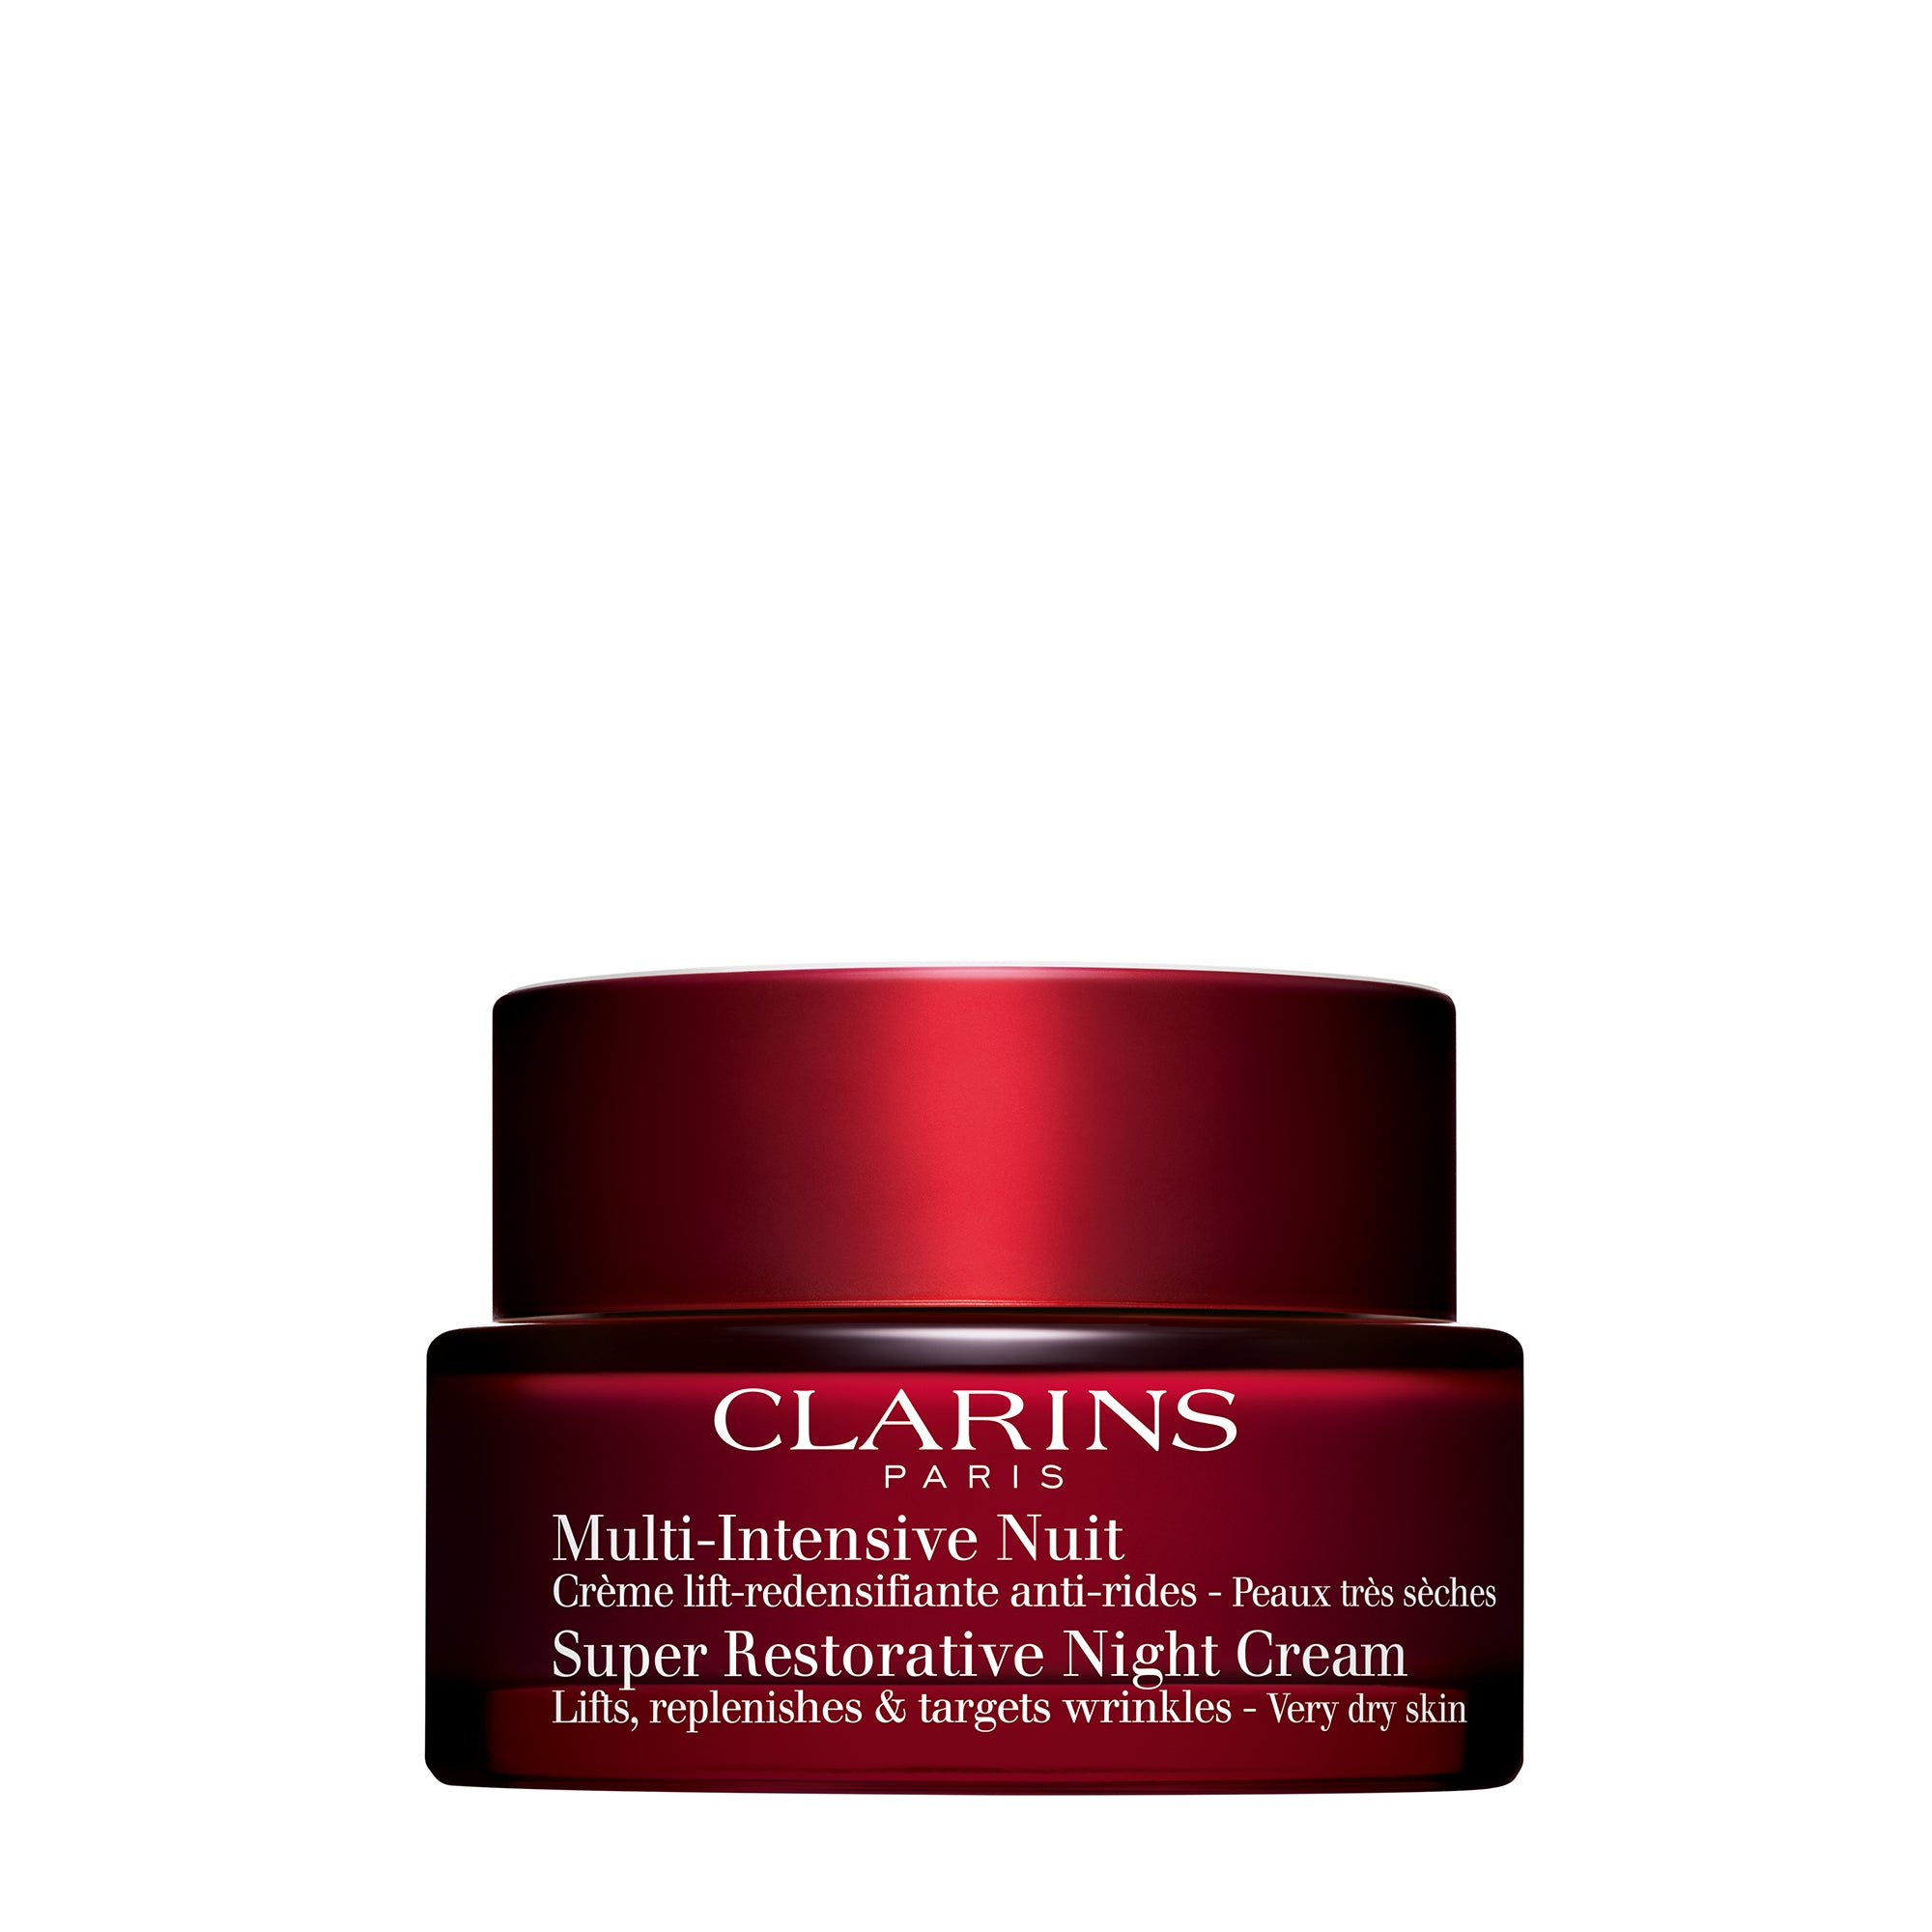 Clarins Super Restorative Night Cream VDS 50ml Image